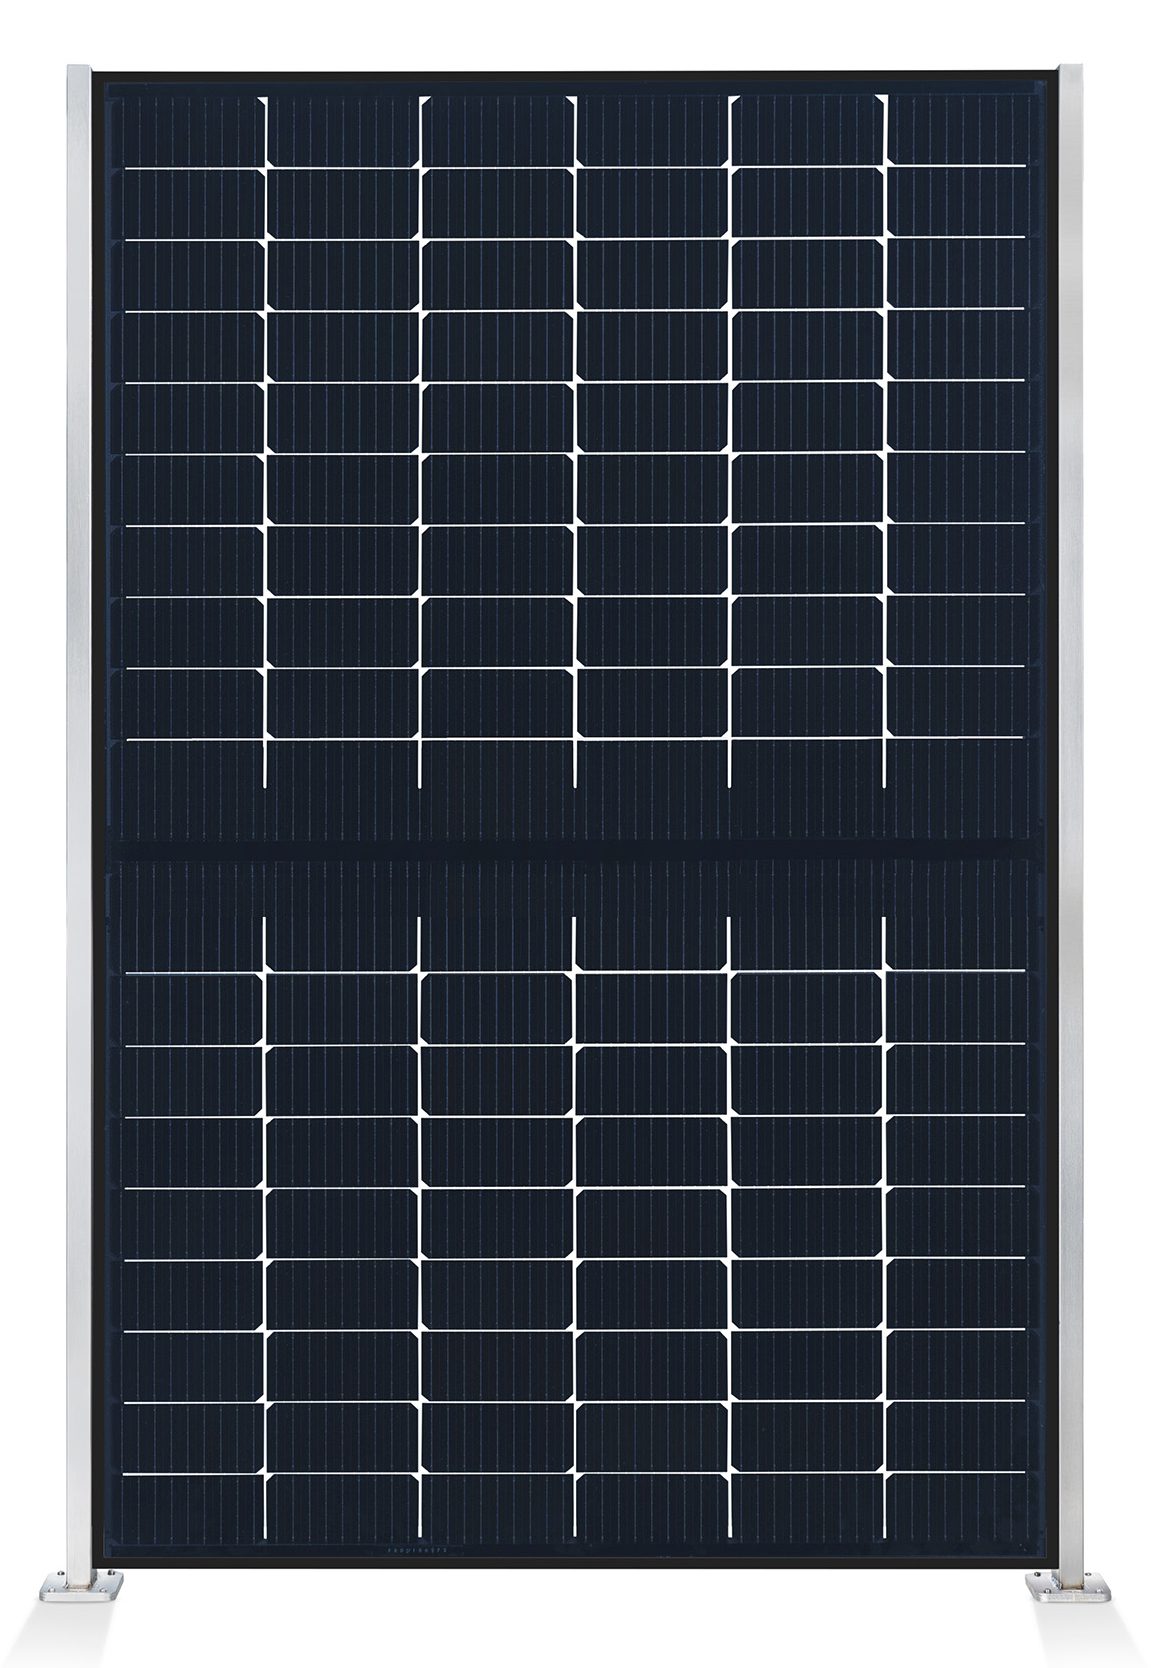 ausschnitt_0001_element-solar-sichtschutz-pv-photovoltaik-zaun-collection-hutter-panel-transparent-pfosten-edelstahl-fro